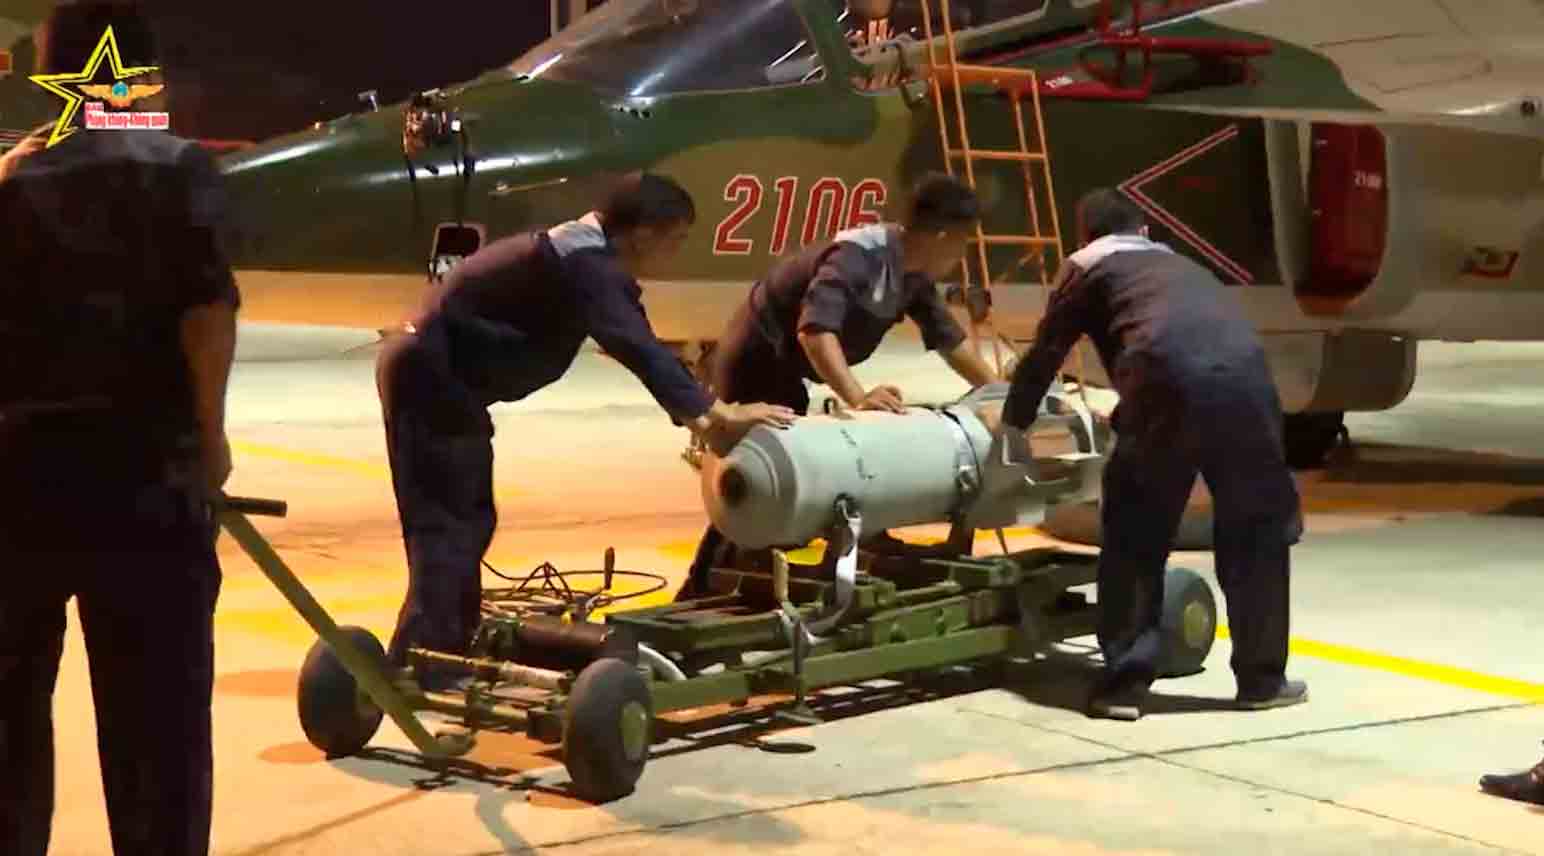 Wideo: Wietnamskie Siły Powietrzne przygotowują odrzutowce Yakovlev Yak-130 do misji ataków naziemnych. Zdjęcia i wideo: Reprodukcja Twitter @AnnQuann